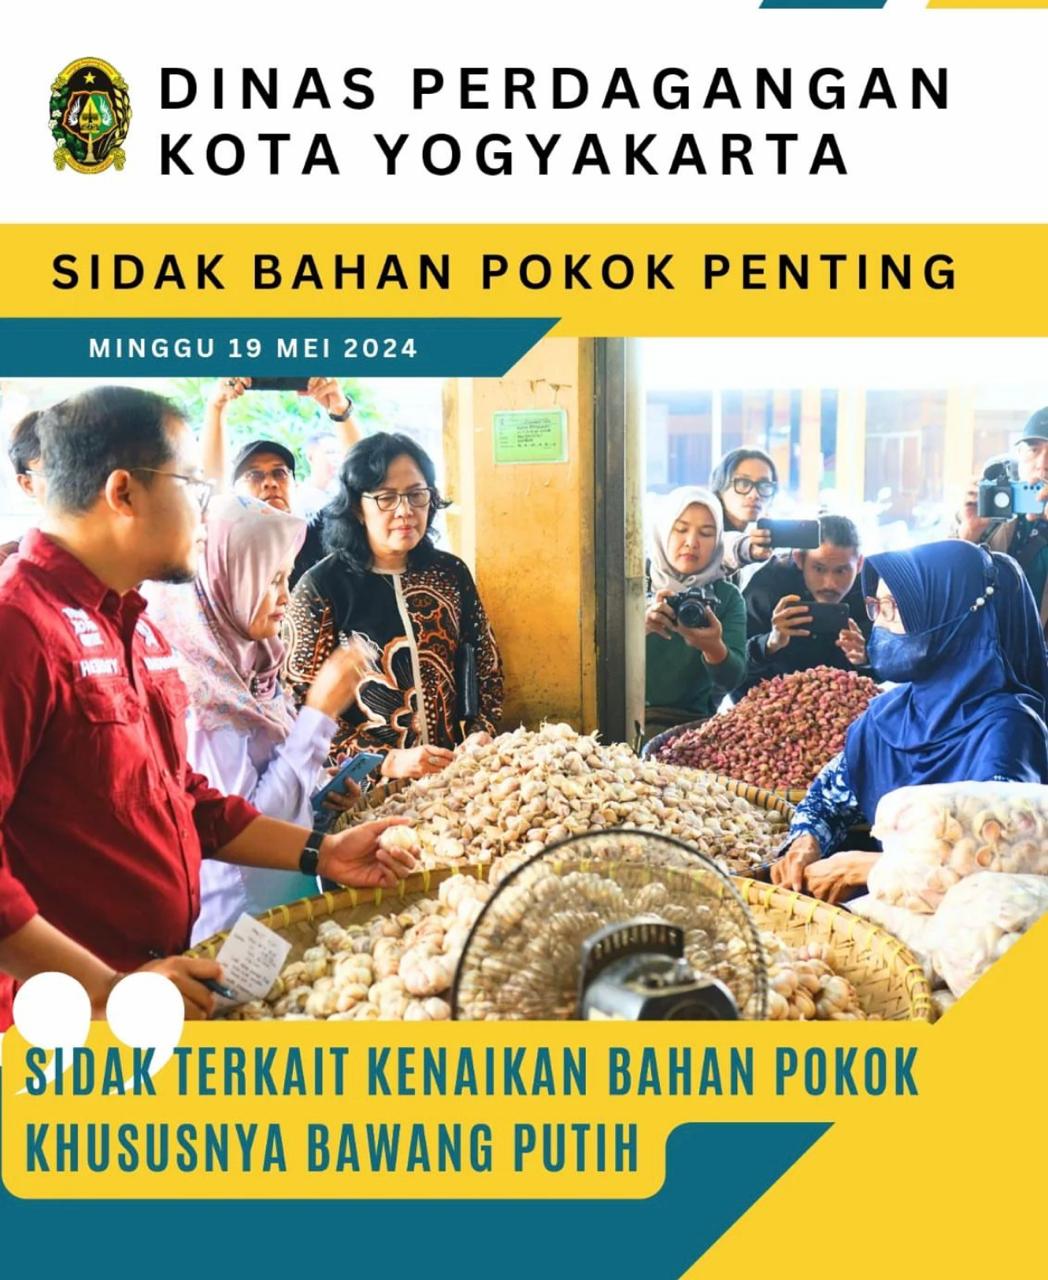 Dinas Perdagangan Kota Yogyakarta Sidak Bahan Pokok Penting, Sidak Terkait Kenaikan Bahan Pokok Khususnya Bawang Putih